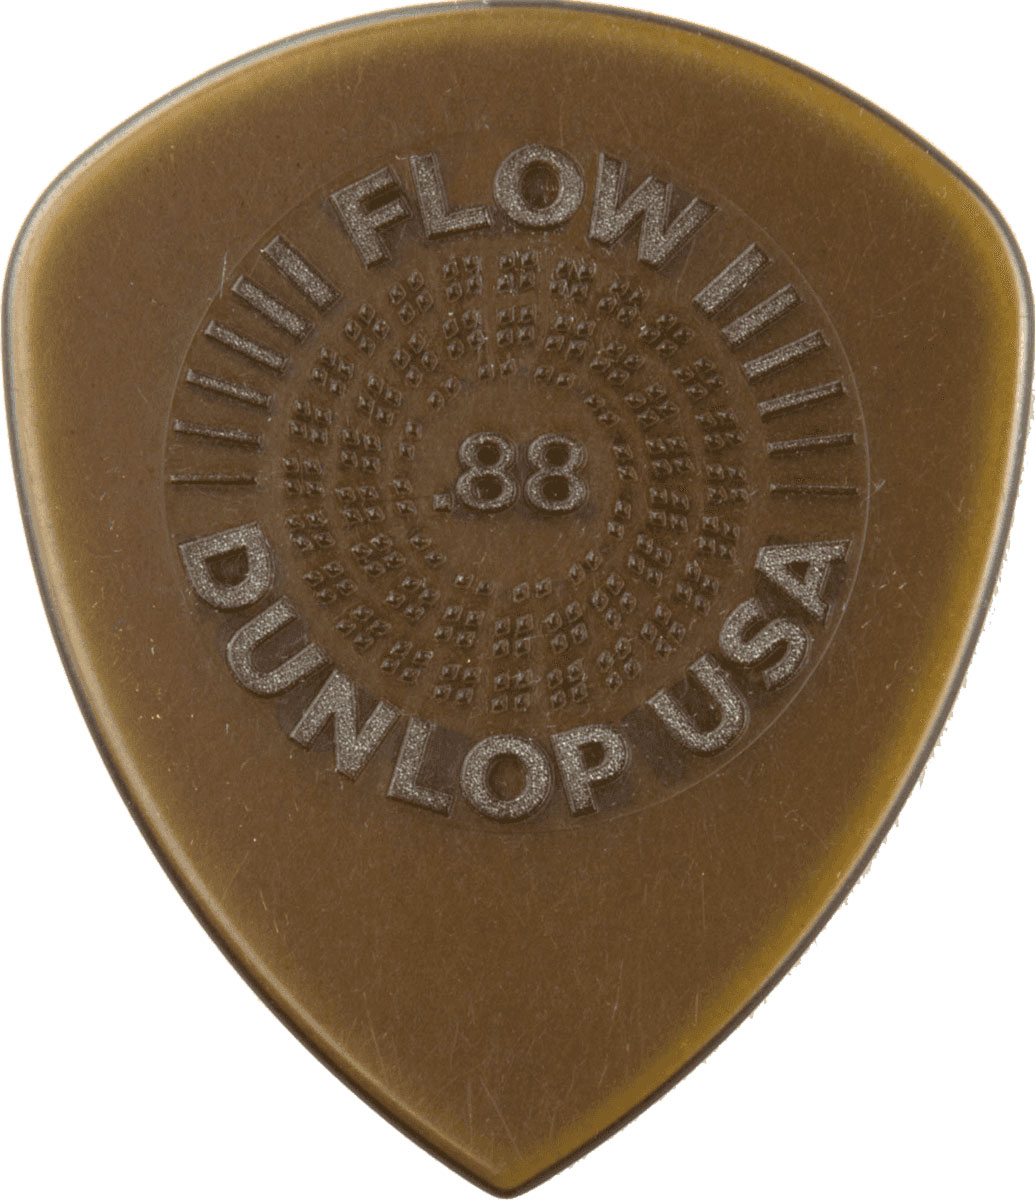 JIM DUNLOP FLOW STANDARD GRIP 0,88MM X 6